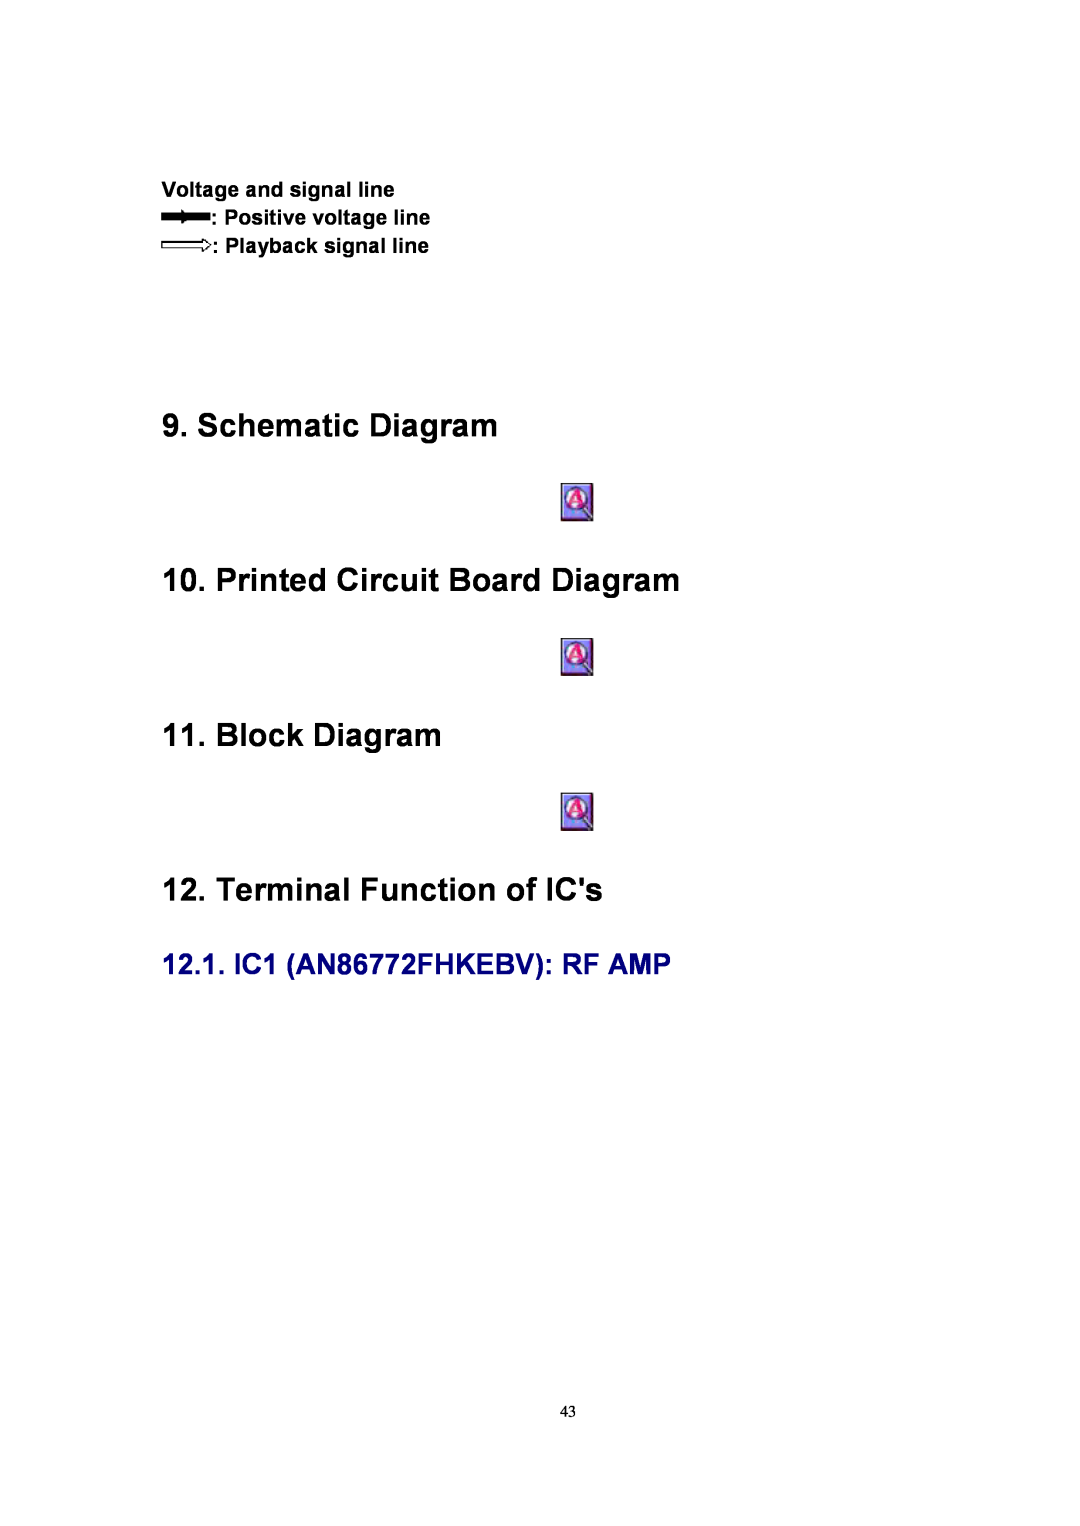 Panasonic SJ-MJ88 manual Schematic Diagram, Printed Circuit Board Diagram 11.Block Diagram, Terminal Function of ICs 